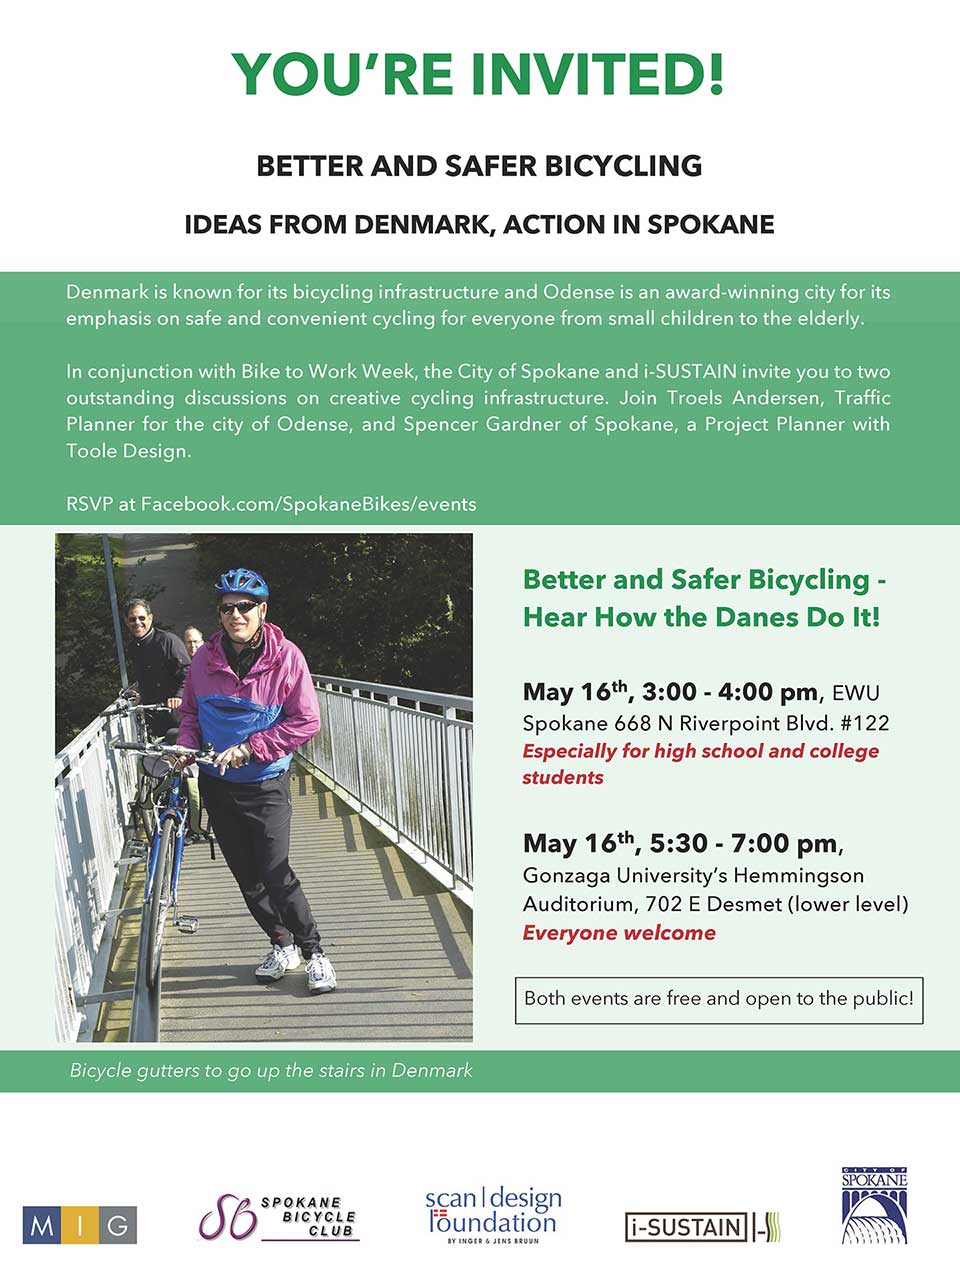 Spokane in Motion Educational Events Flyer